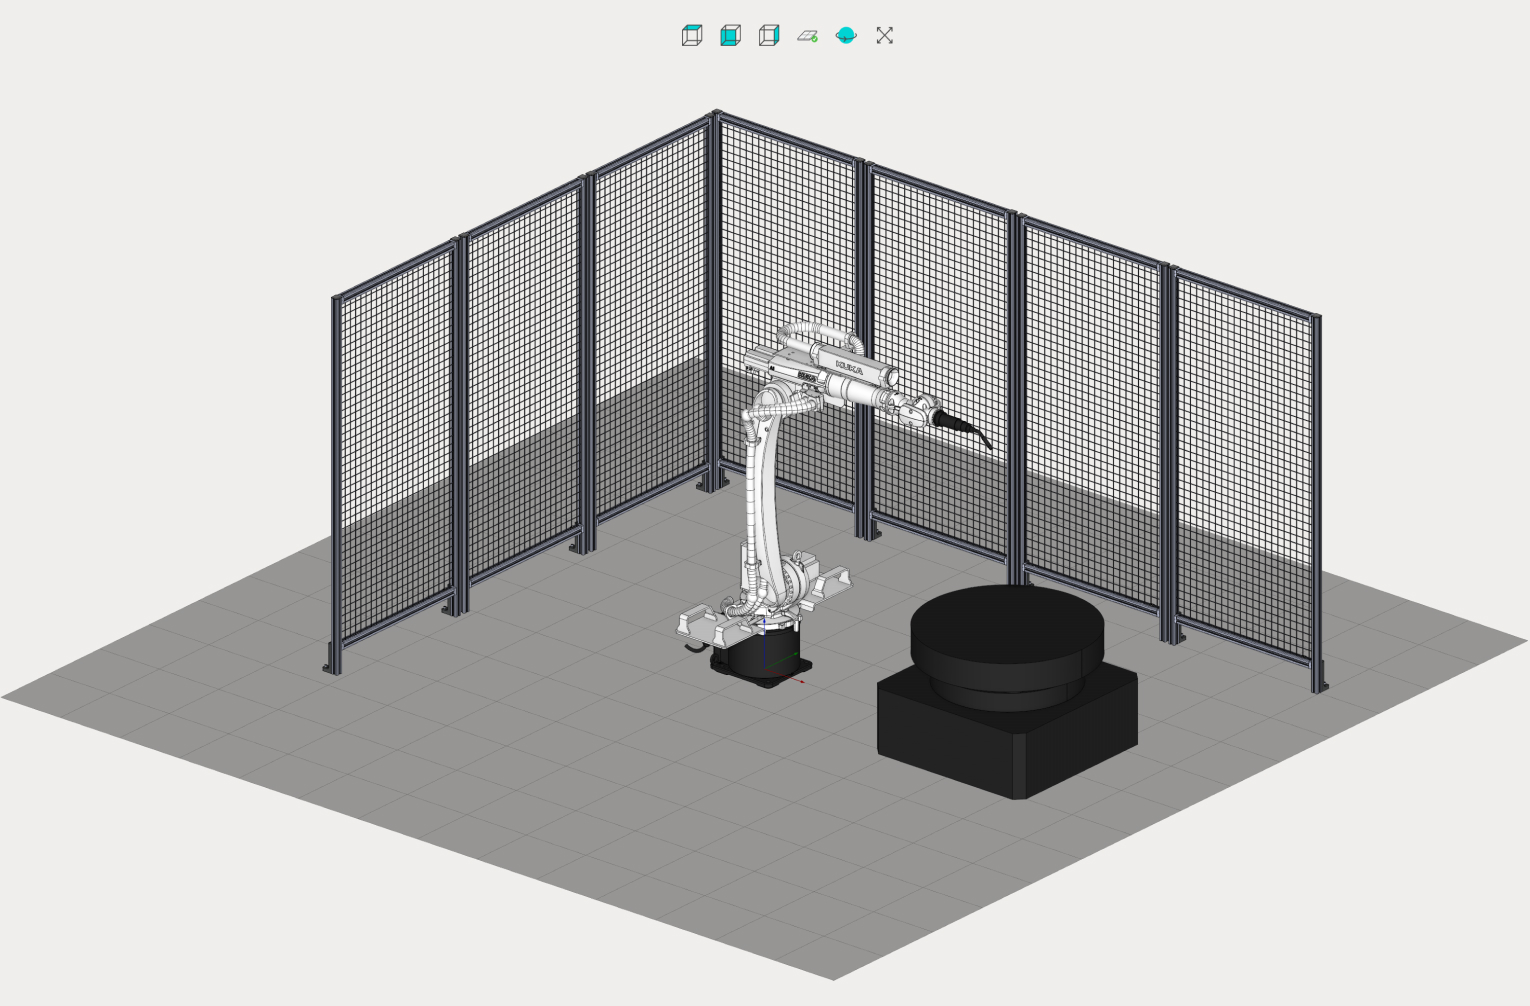 Robot offline programming: MachineMaker tool